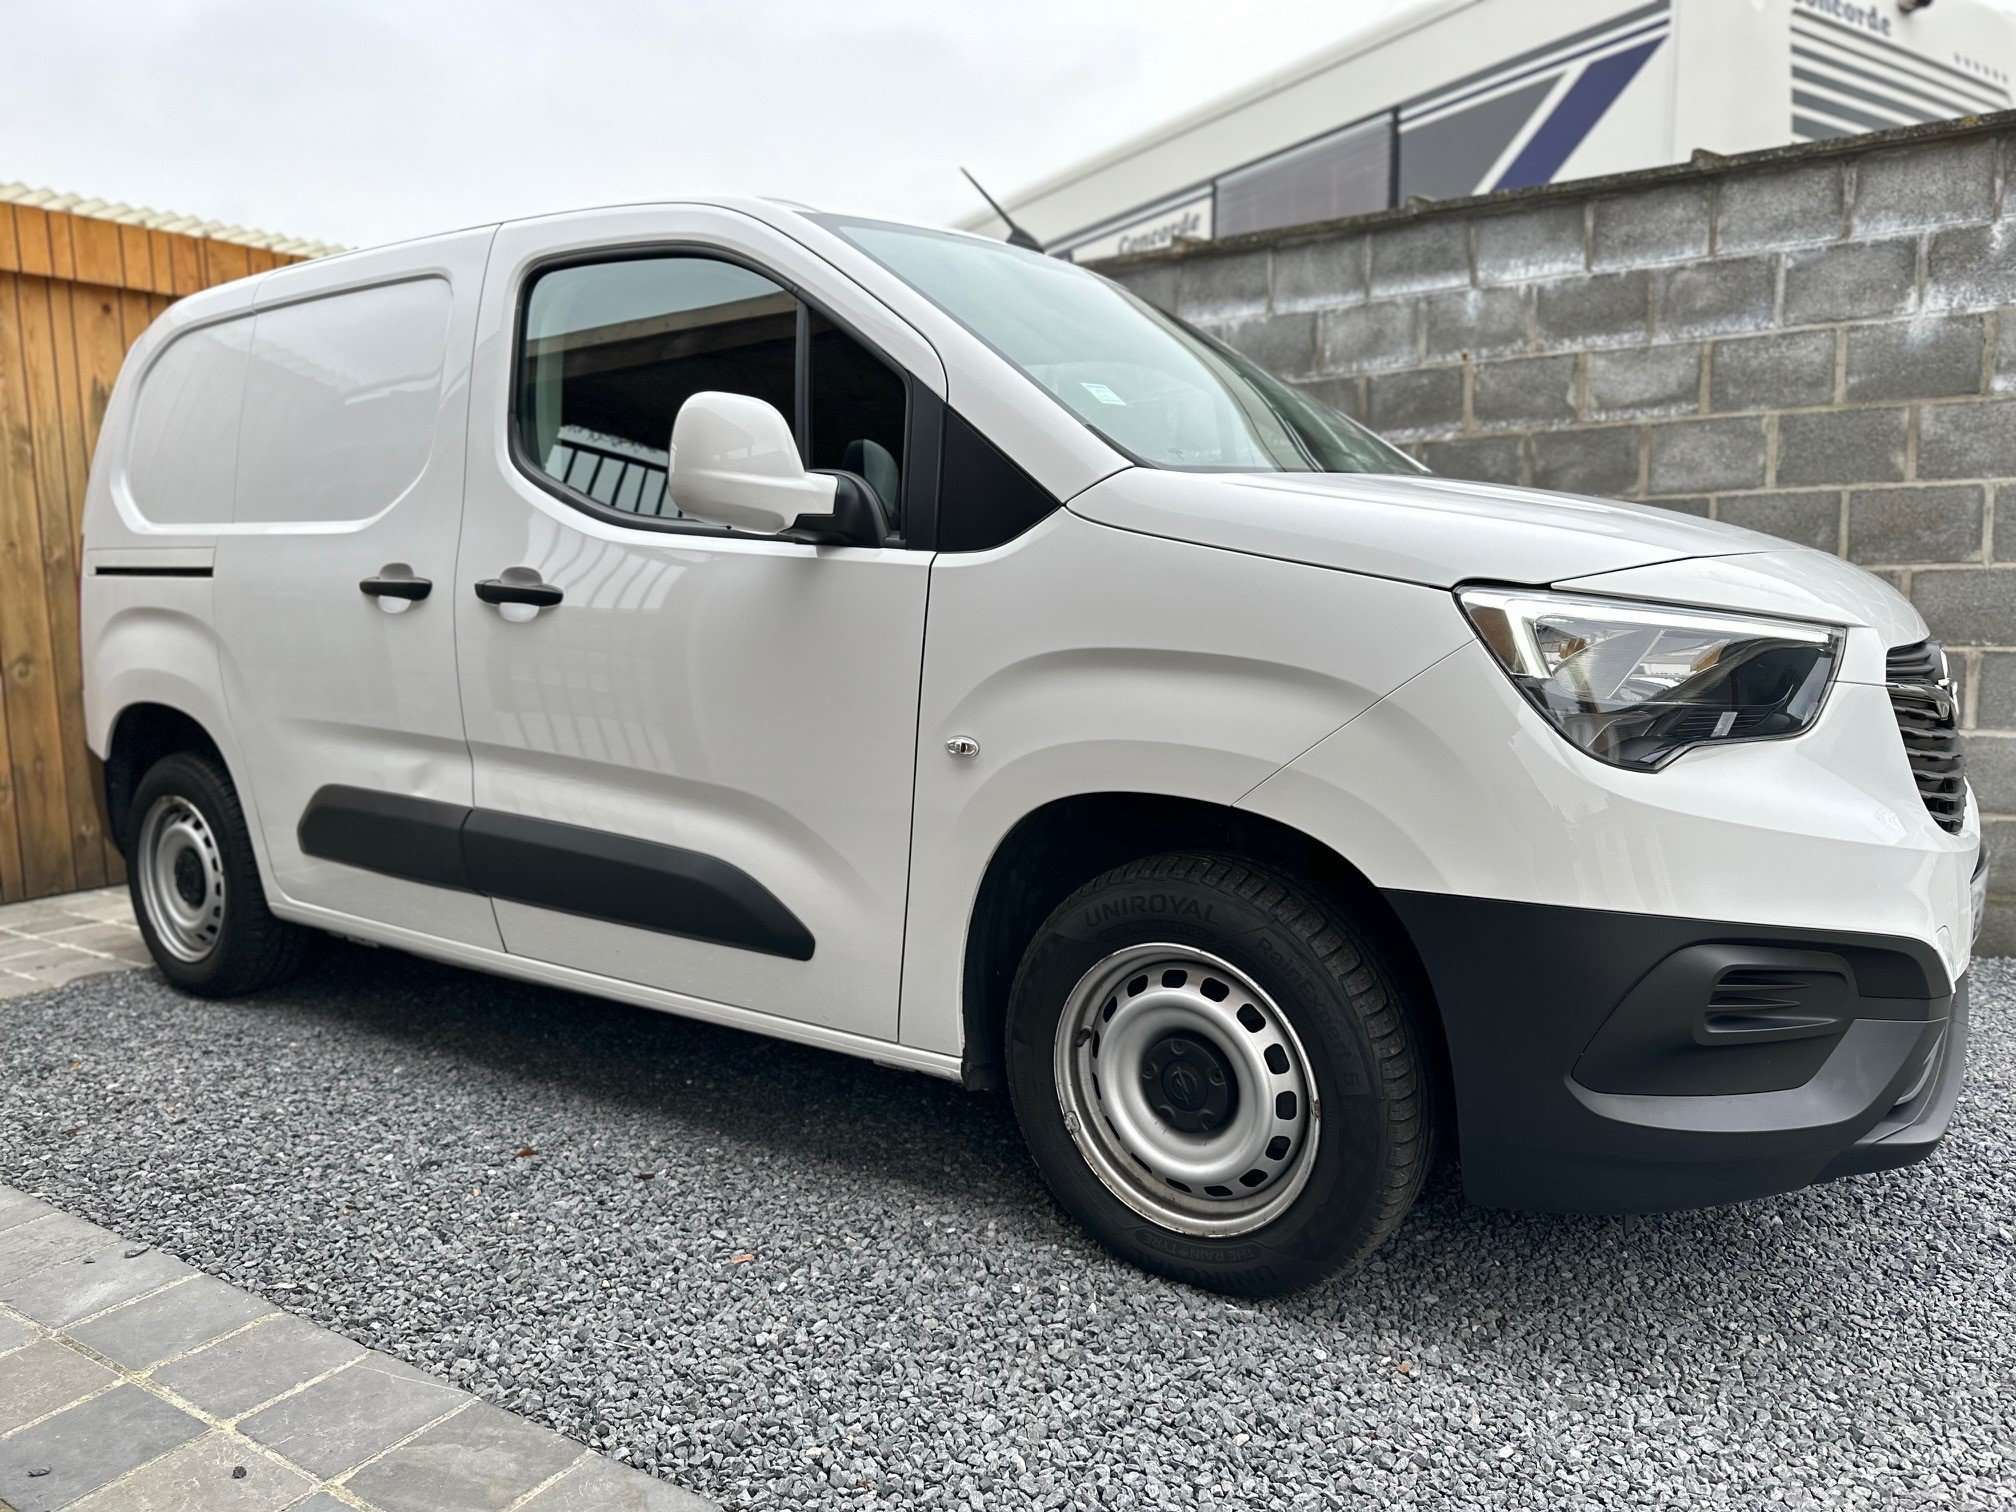 Opel Combo Transporter in White used in Wommelgem for € 15,950.-